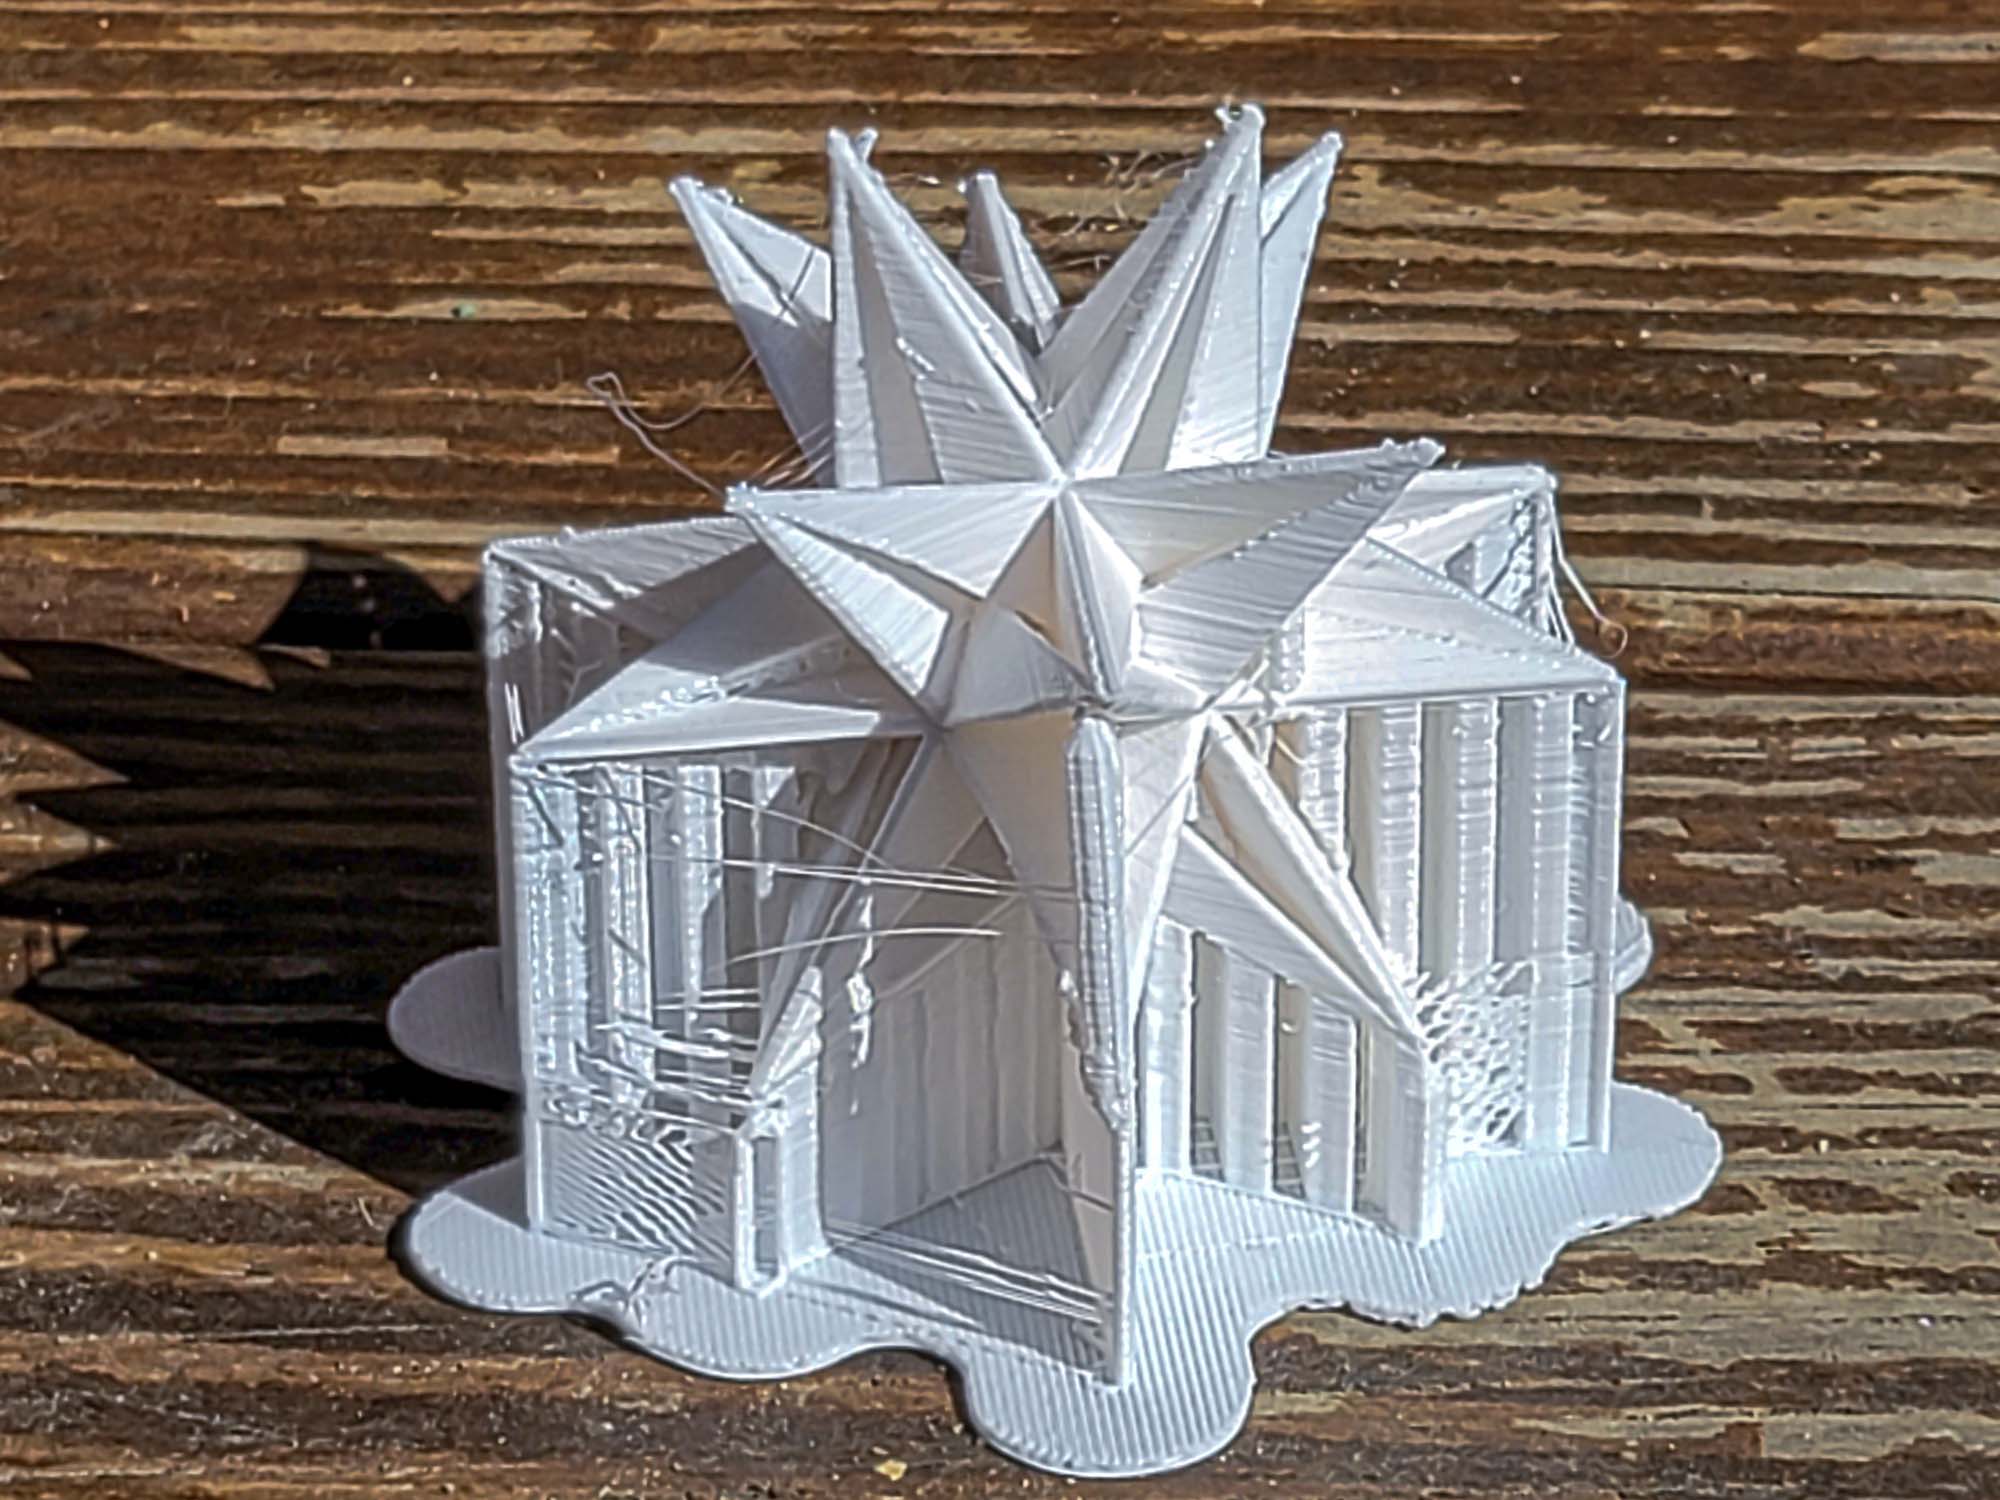 Monoprice Delta Mini V2 3D printer review